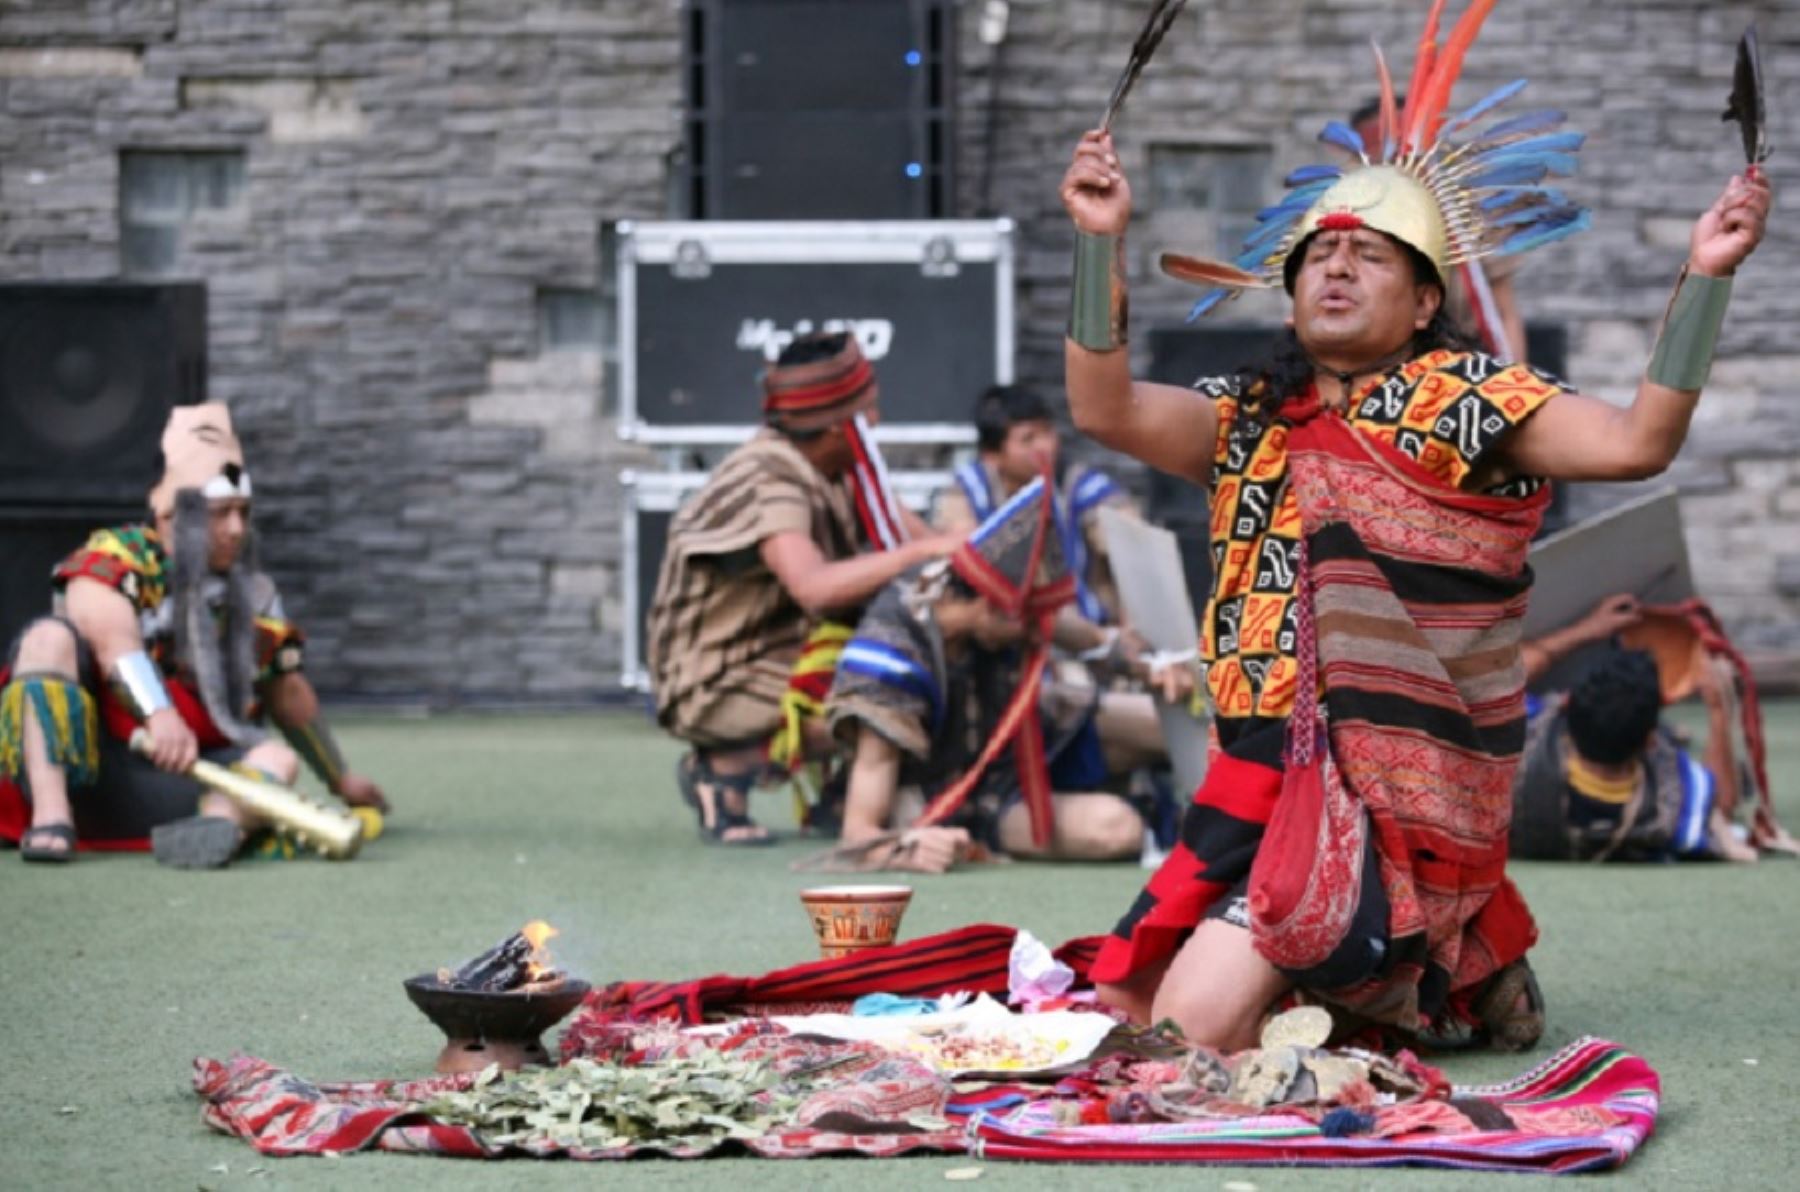 La ceremonia ancestral que exhibe al Santuario Histórico y Parque Arqueológico de Machu Picchu como una de las mayores construcciones incas fue llevada adelante con la escenificación del Purucallay Raymi, fiesta conmemorativa sobre las obras del gran gobernante del Tahuantinsuyo, el inca Pachacútec.